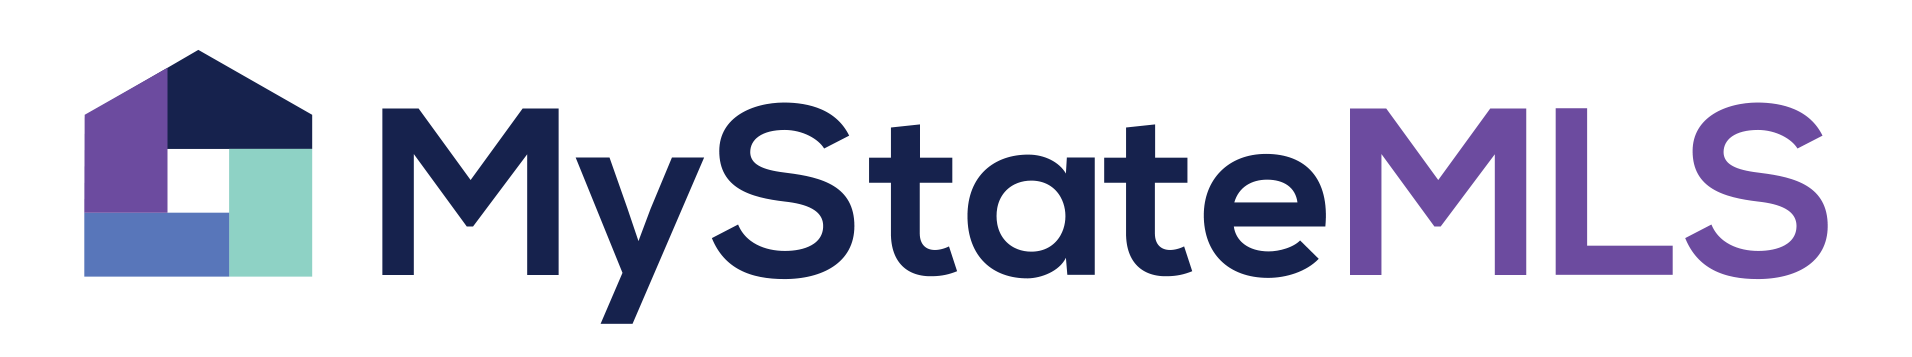 mystate mls logo